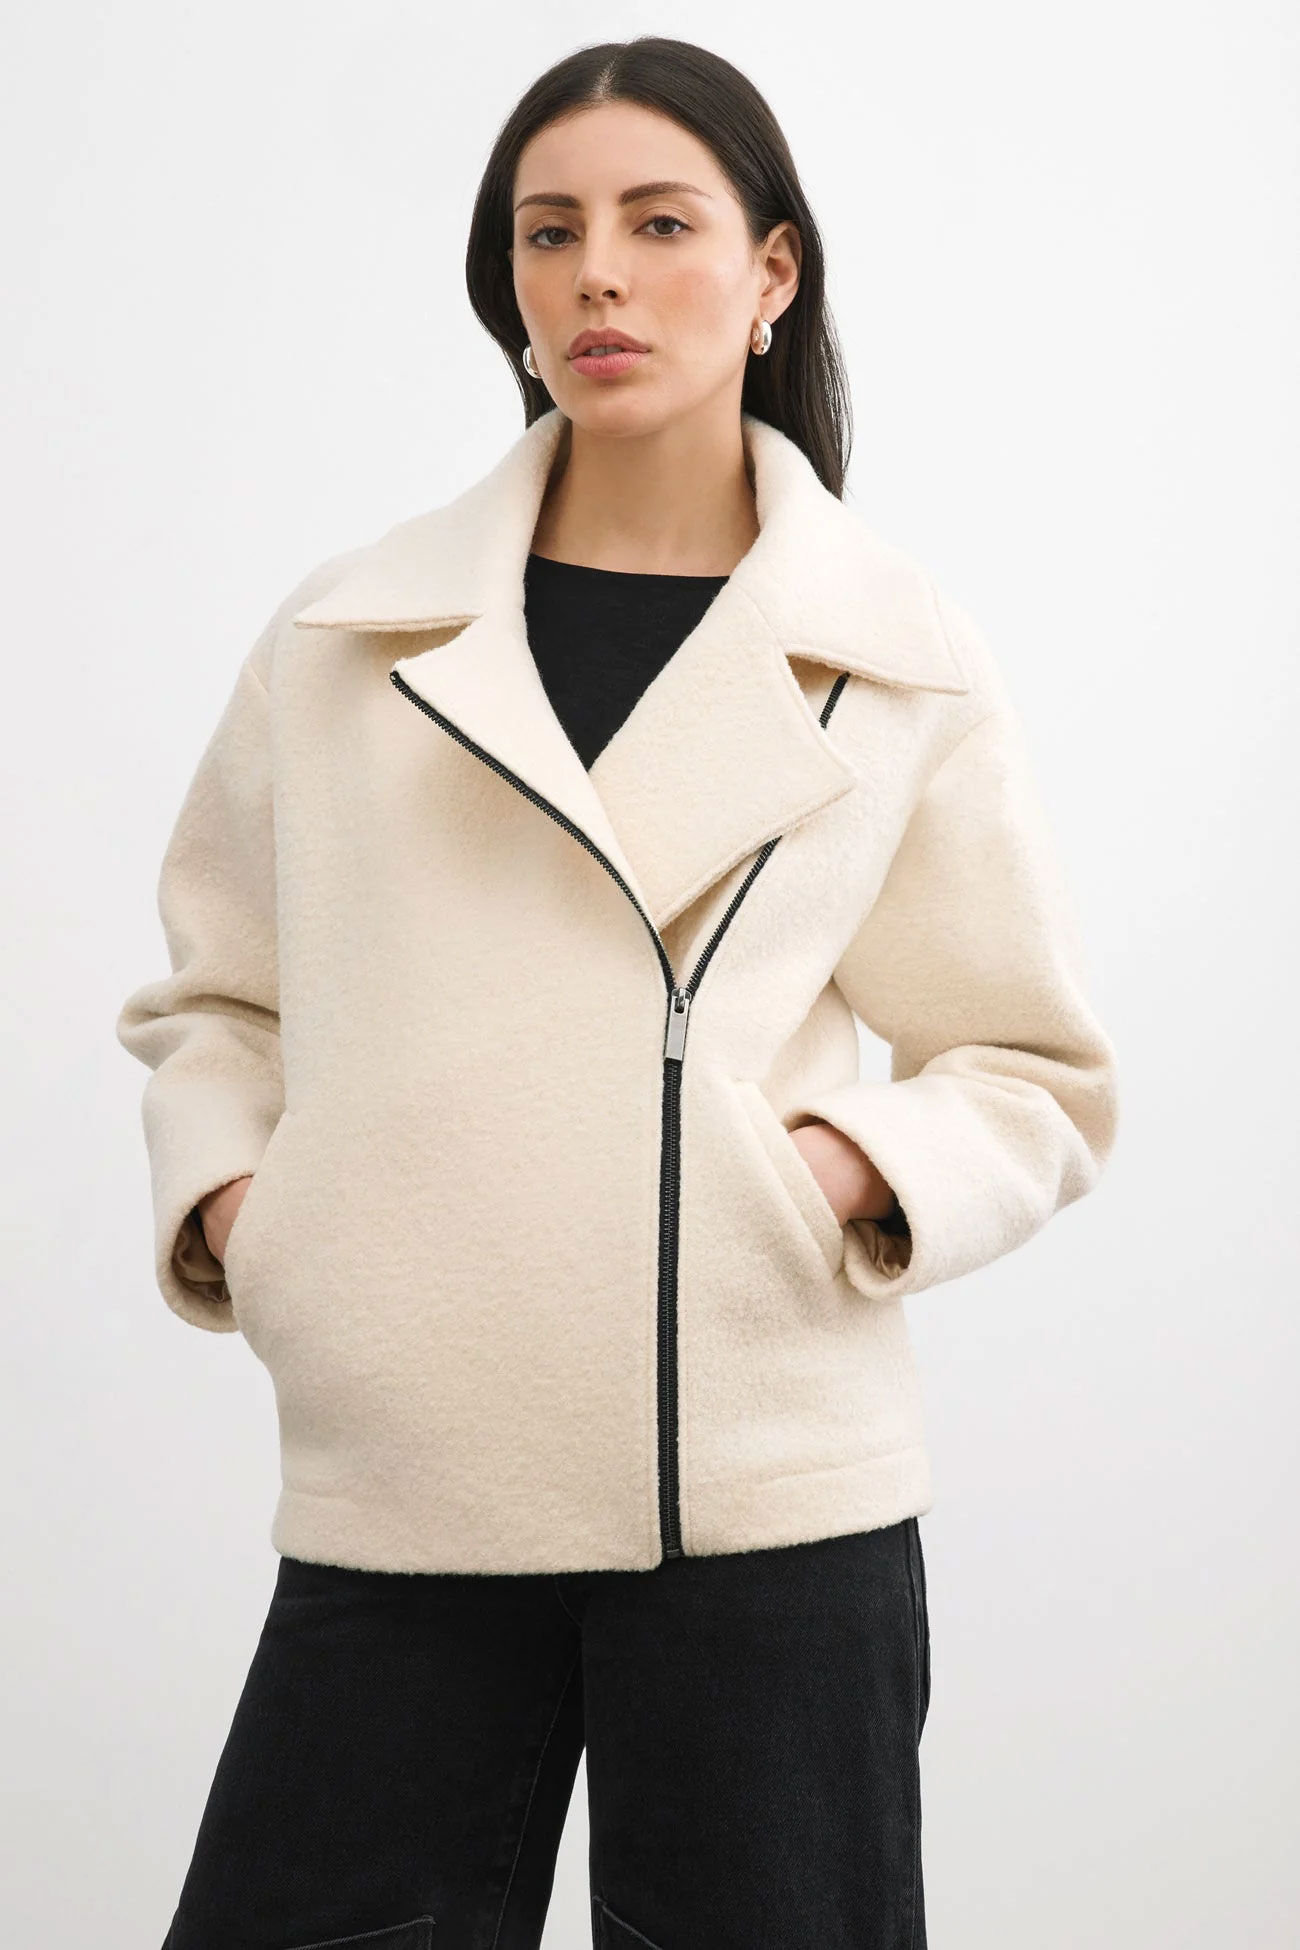 Marcella New York cream wool coat - sustainable brands like Zara